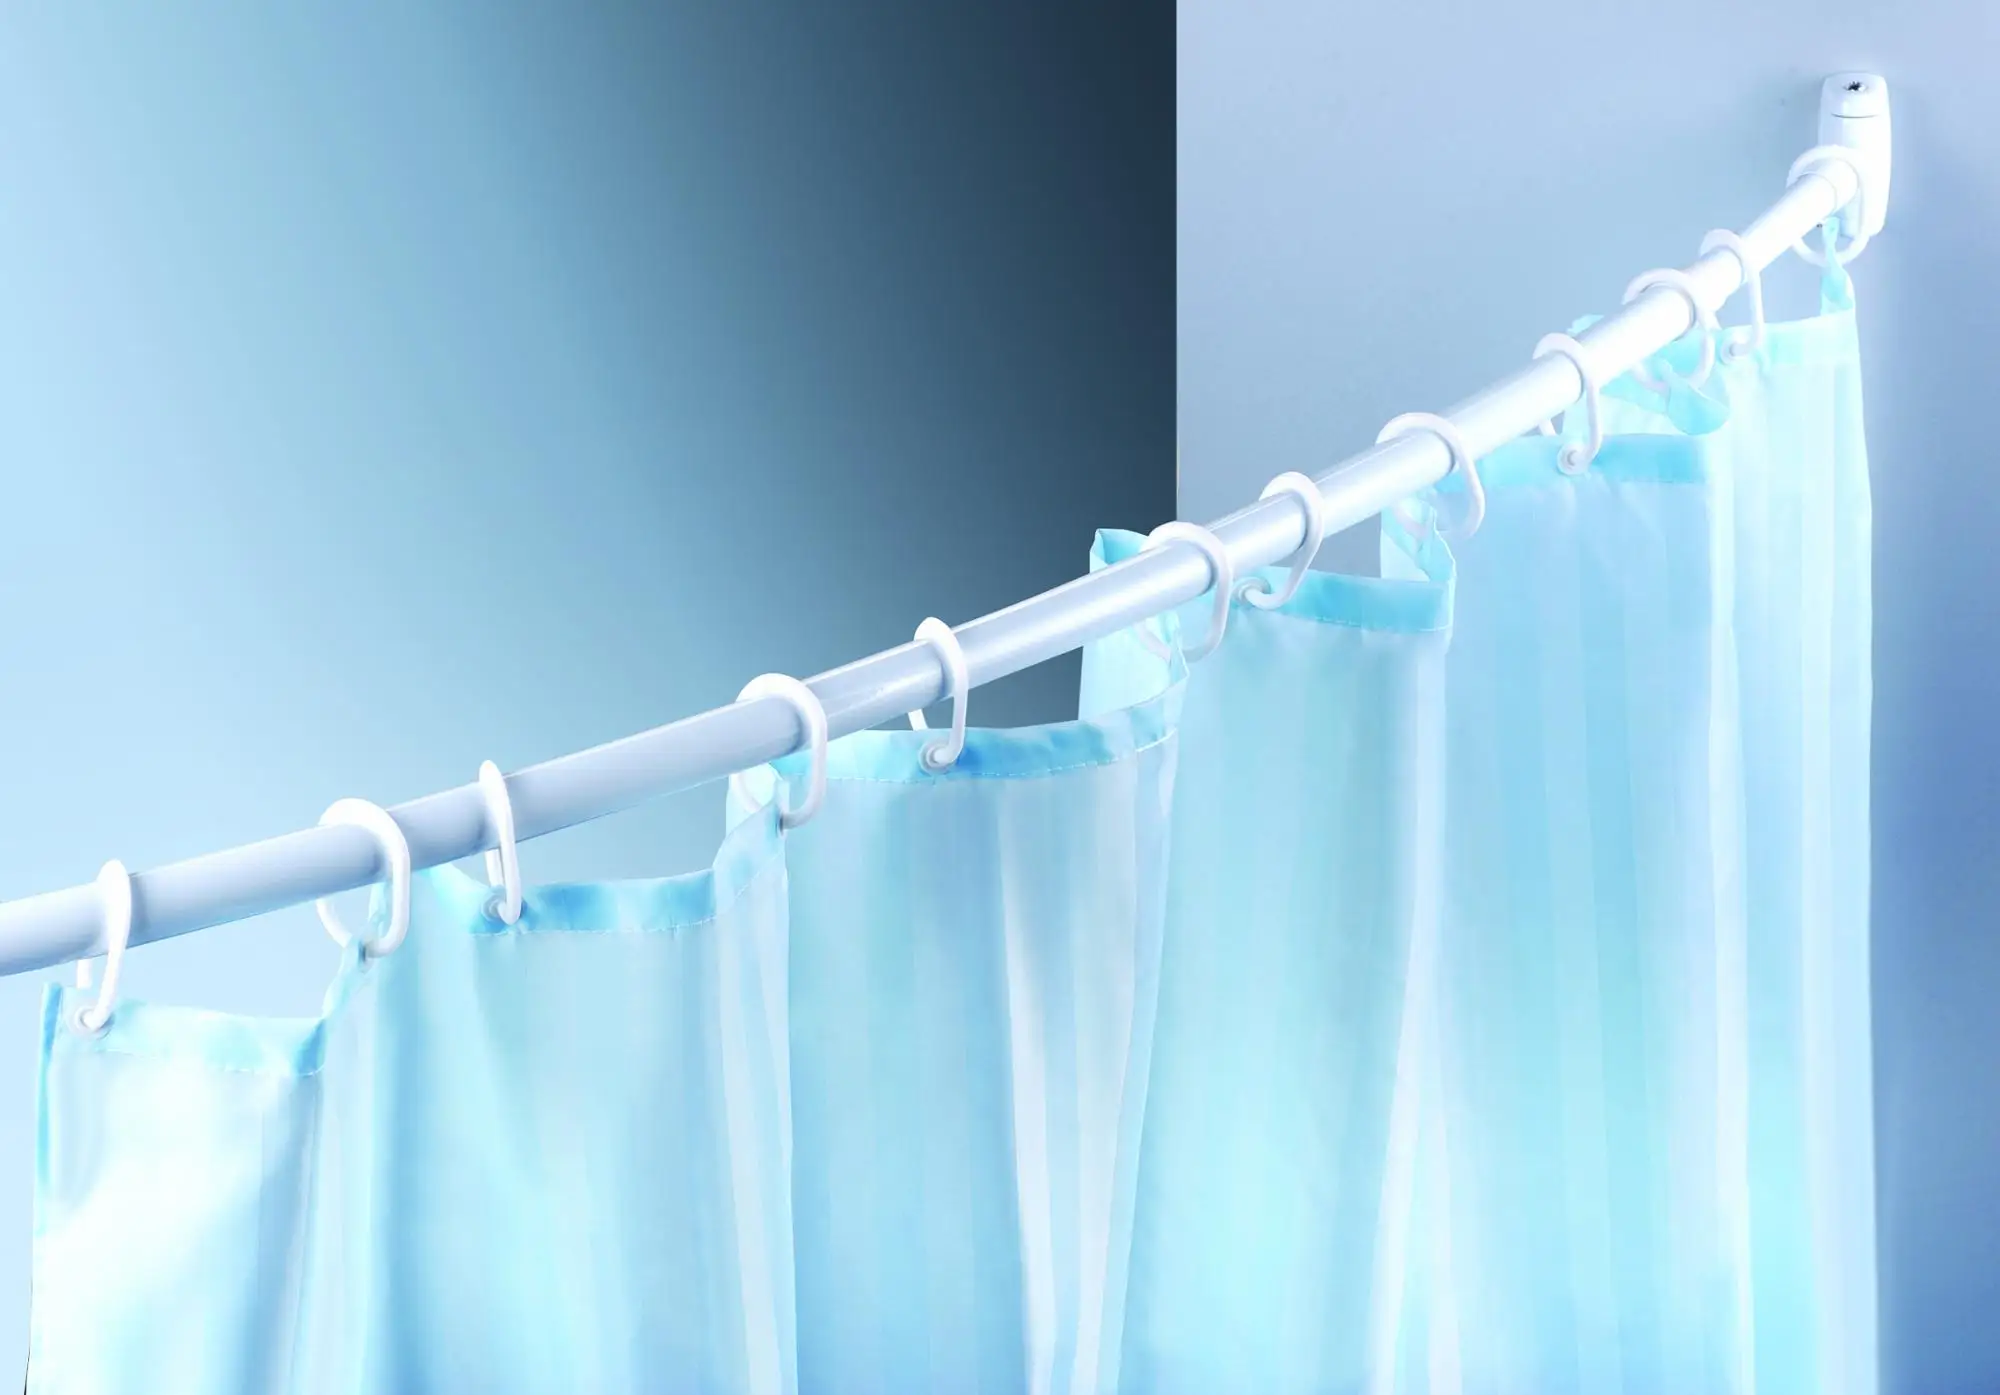 Plastic fetish shower curtain